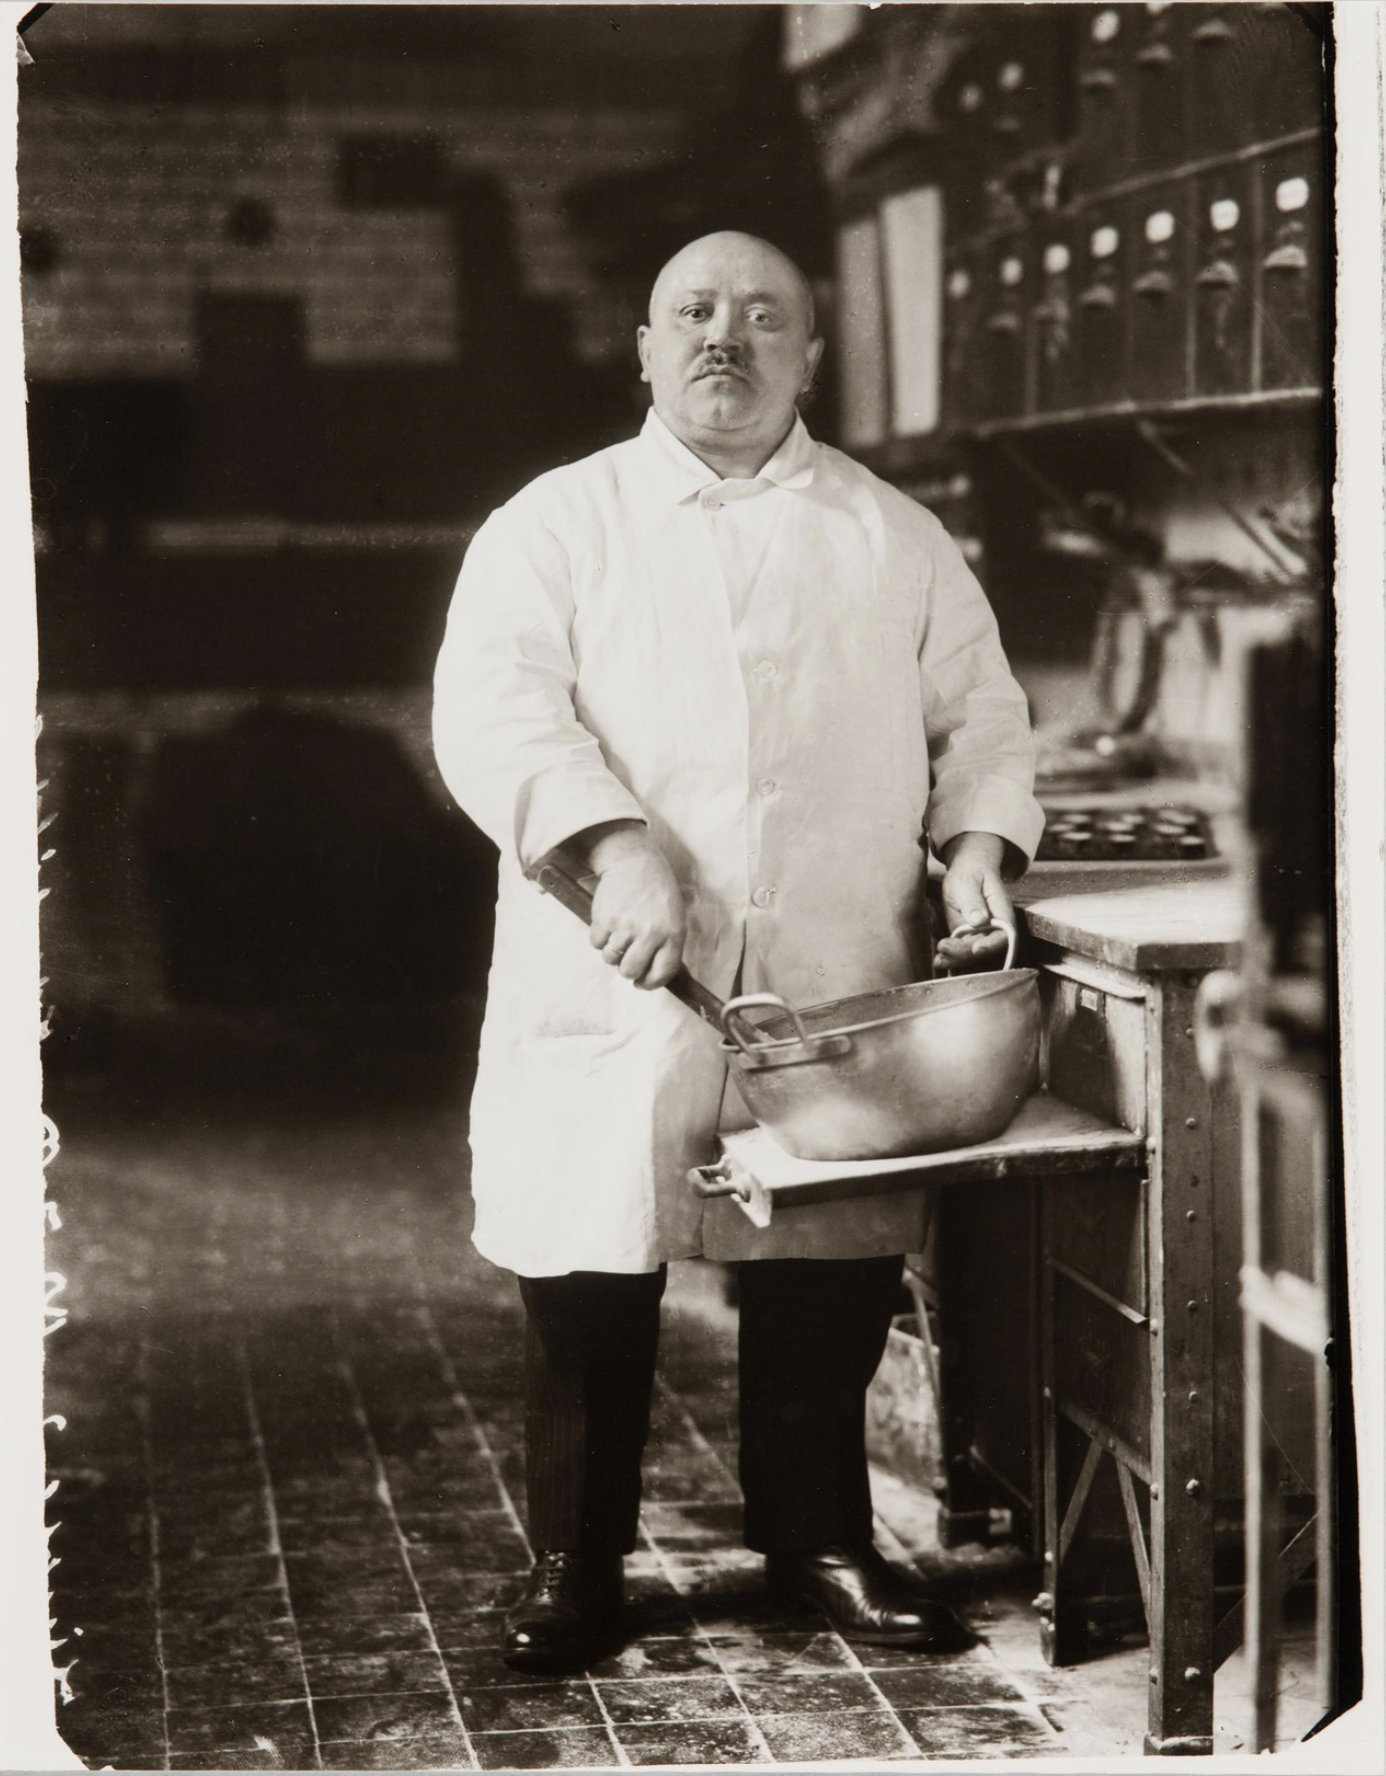 August Sander, Pastry Cook (Konditor), 1928, gelatin silver print, 30.32 × 22.54 cm (Carnegie Museum of Art, Carnegie Institute)